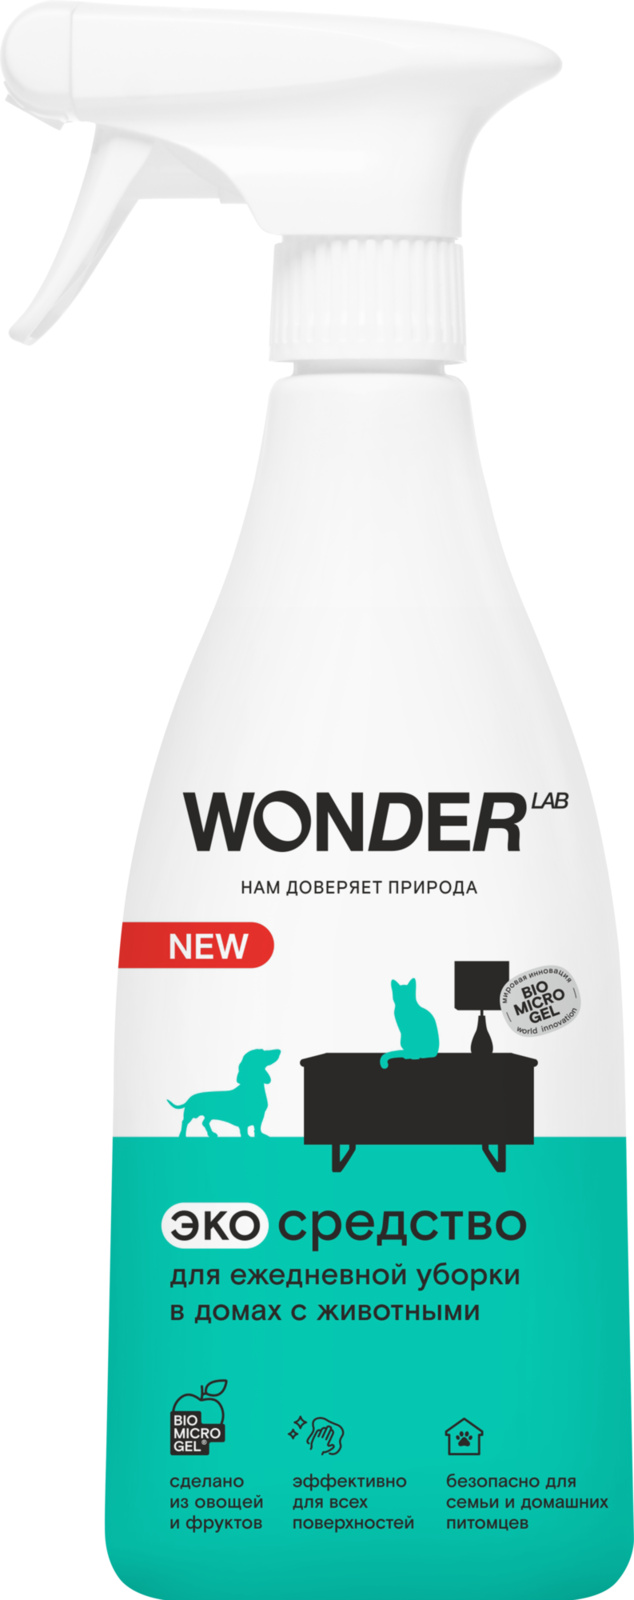 Wonder lab Wonder lab универсальное чистящее средство для уборки в домах с животными, экологичное, для удаления любых загрязнений от питомцев, 550 мл (552 г)